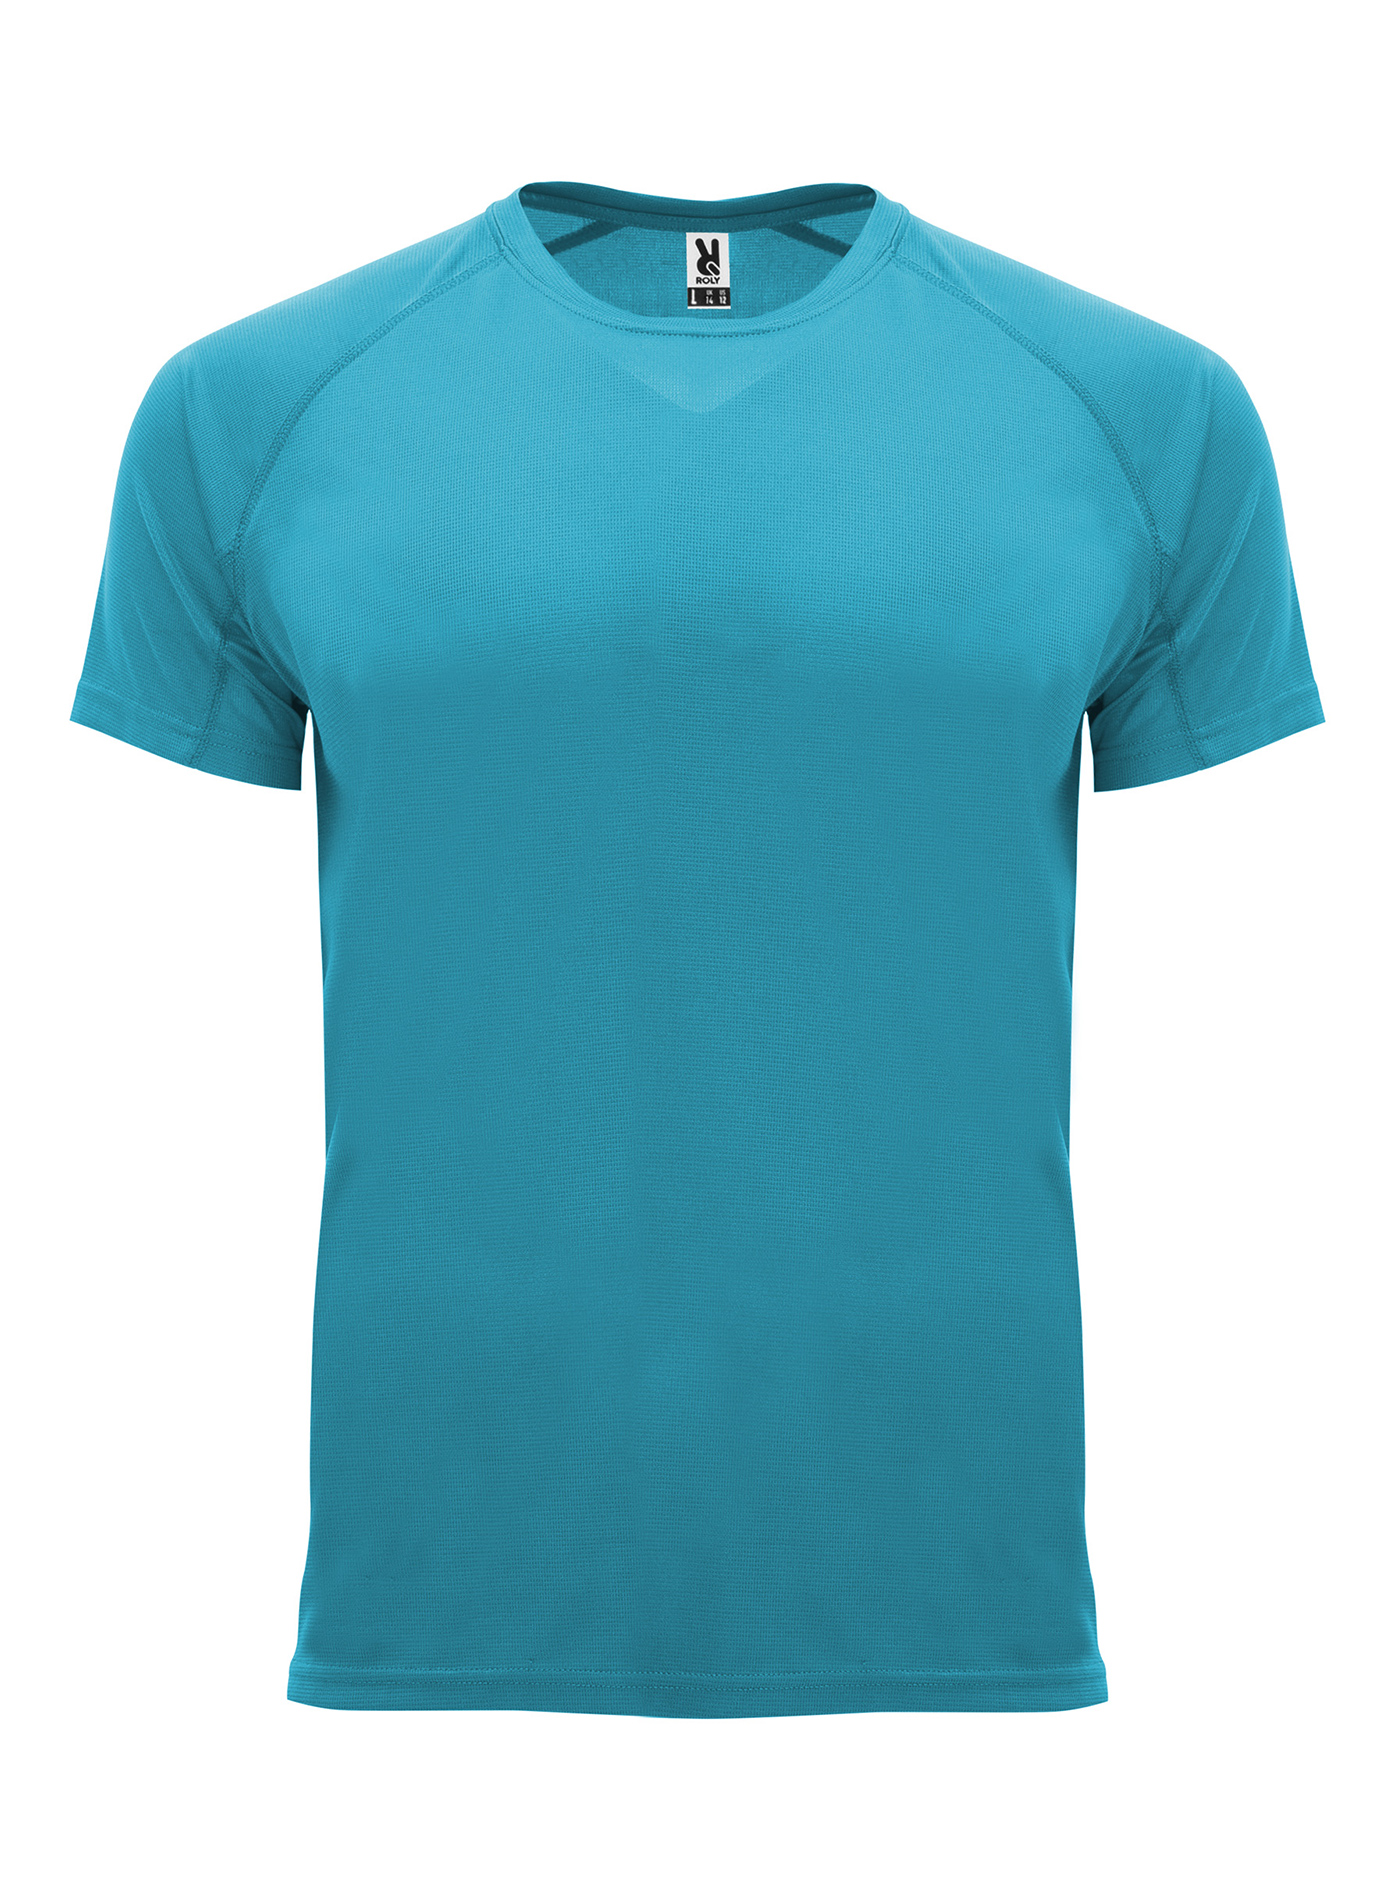 Pánské sportovní tričko Roly Bahrain - Tyrkysově modrá XXL